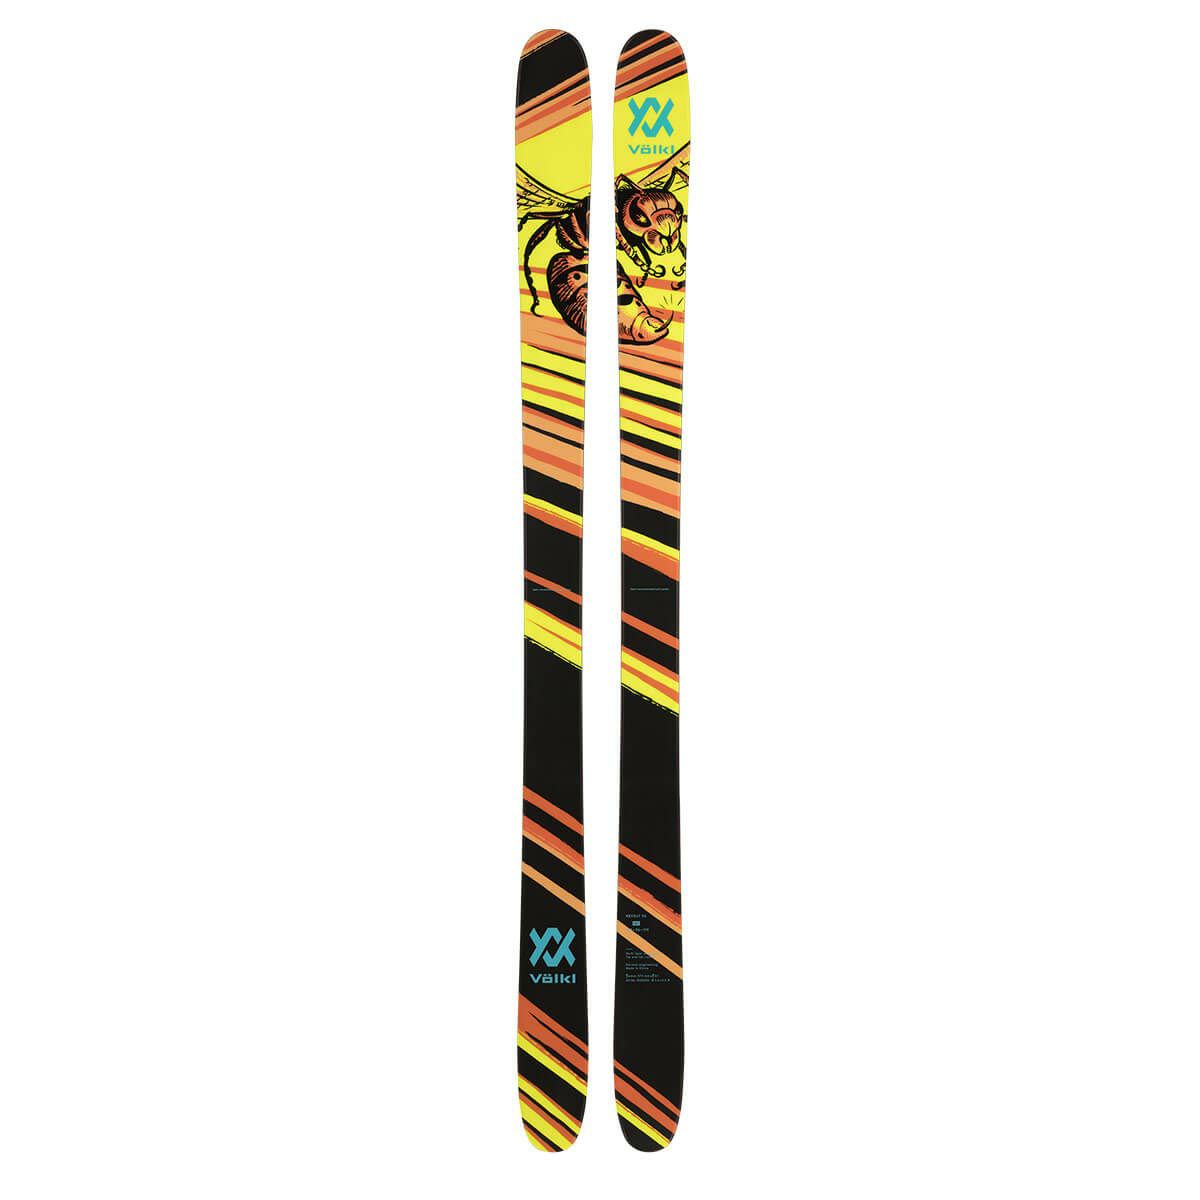 Volkl フォルクル ウォールモーグル スキー板 175cm - 板